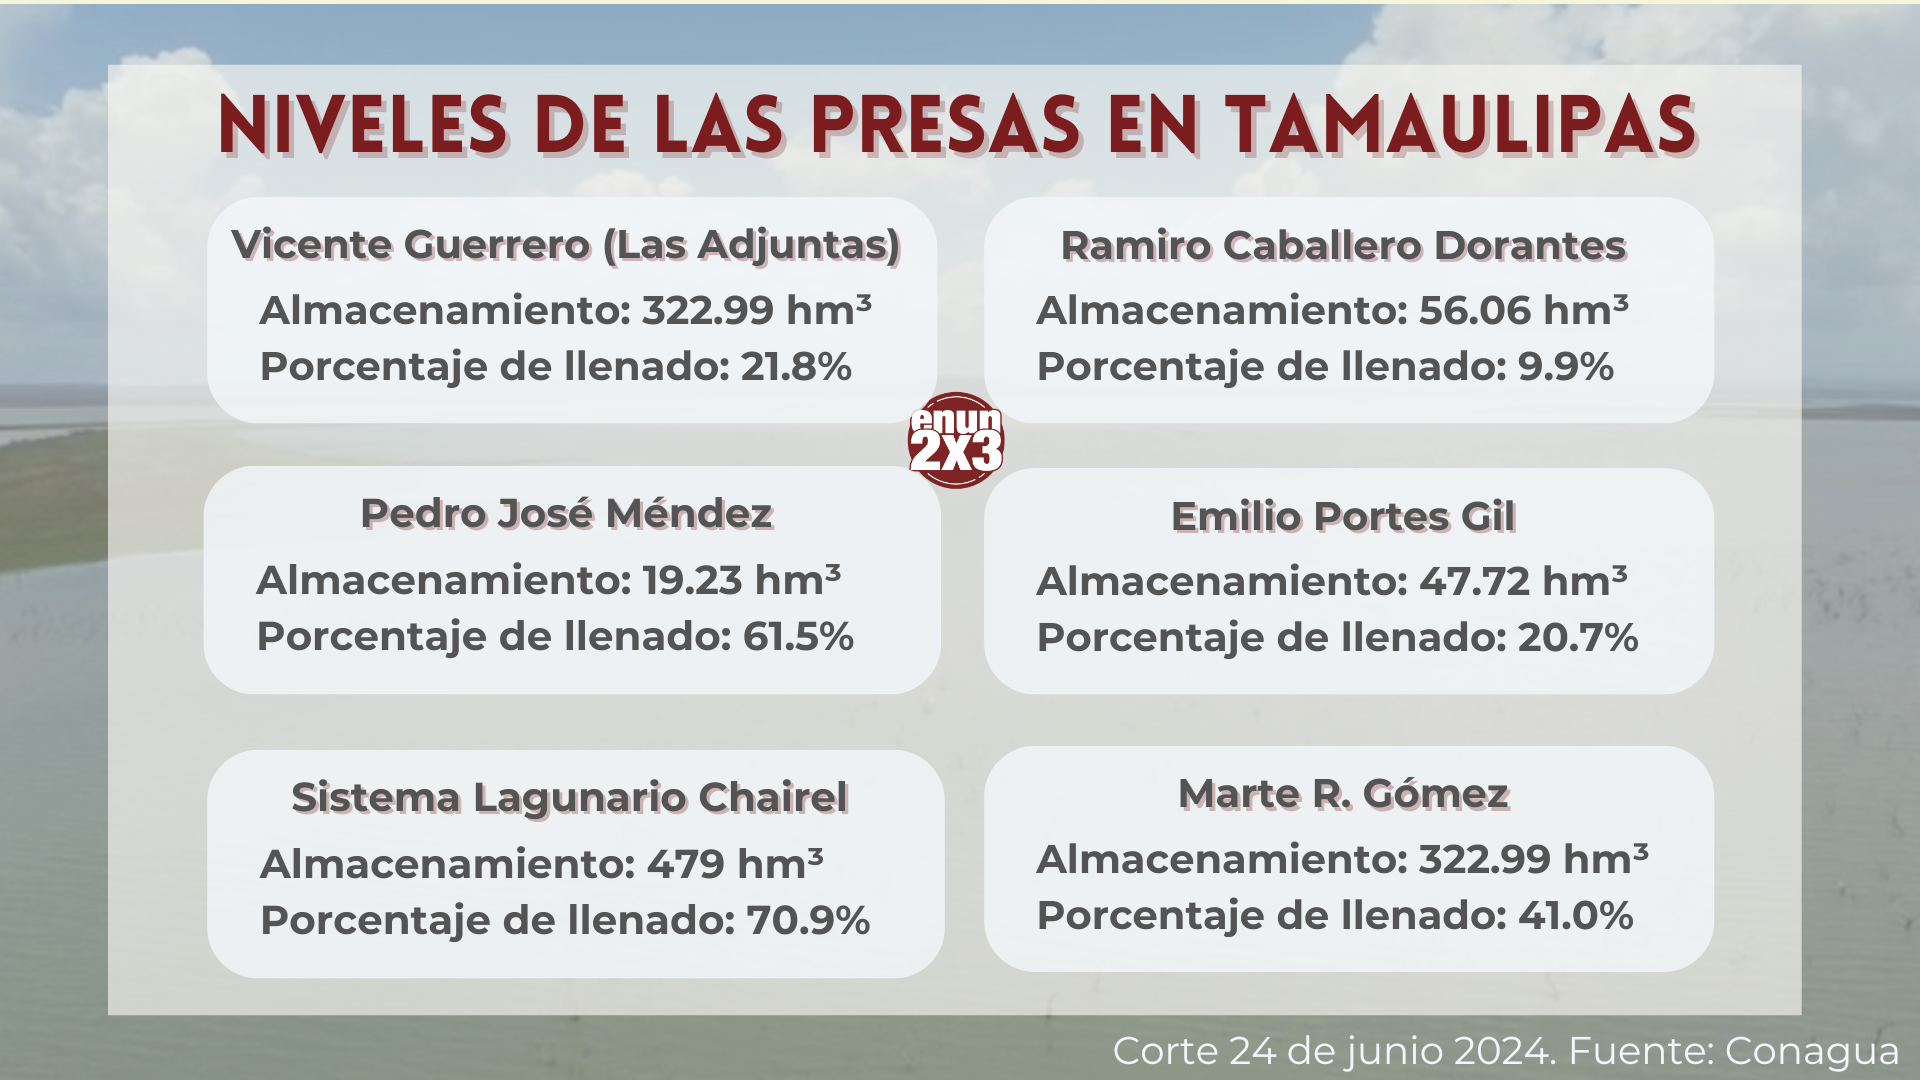 Niveles de las presas en Tamaulipas